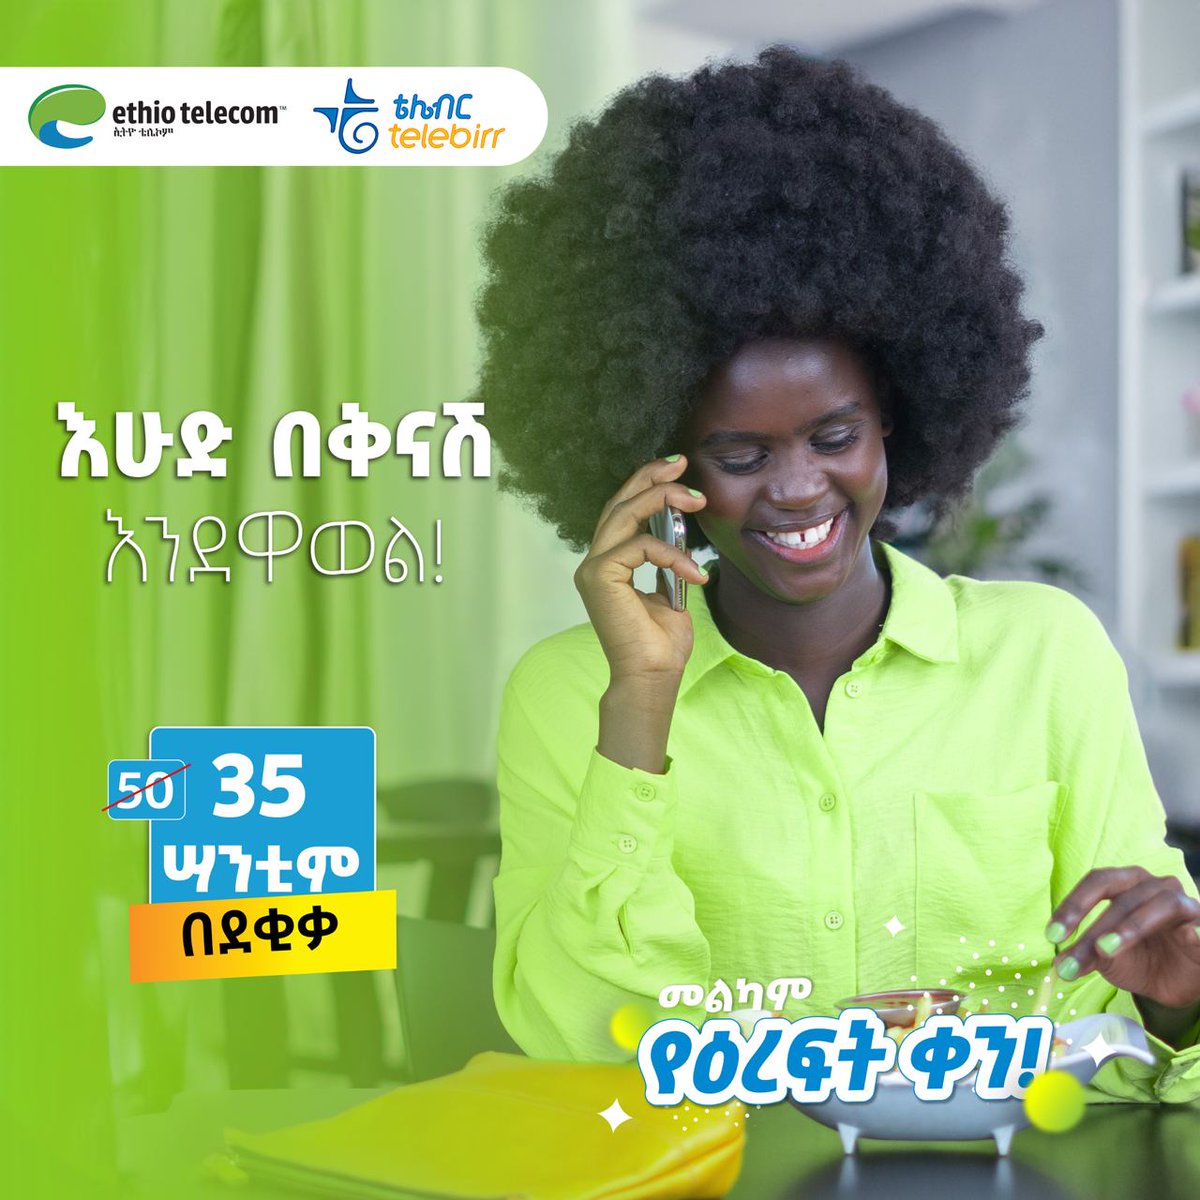 መልካም የእረፍት ቀን! በደቂቃ 35 ሳንቲም ለወዳጆችዎ ይደውሉ! #Sunday #StayConnected #Ethiotelecom #telebirr #DigitalAfrica #DigitalEthiopia #RealizingDigitalEthiopia